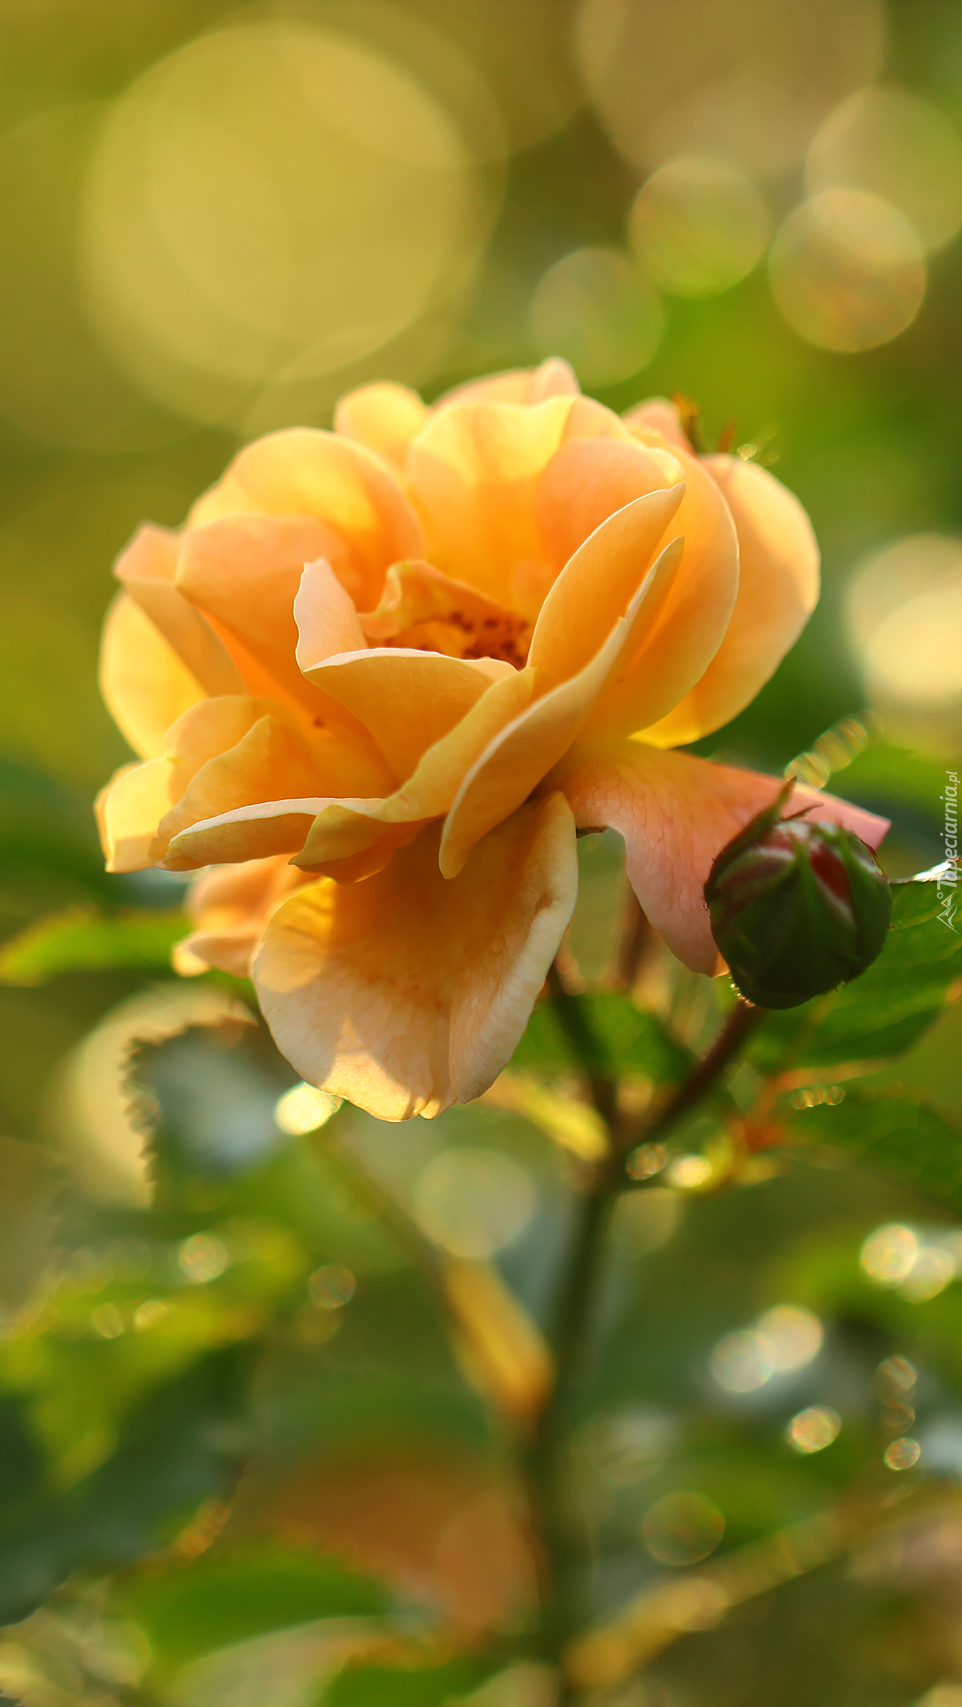 Róża i jej rozchylone płatki